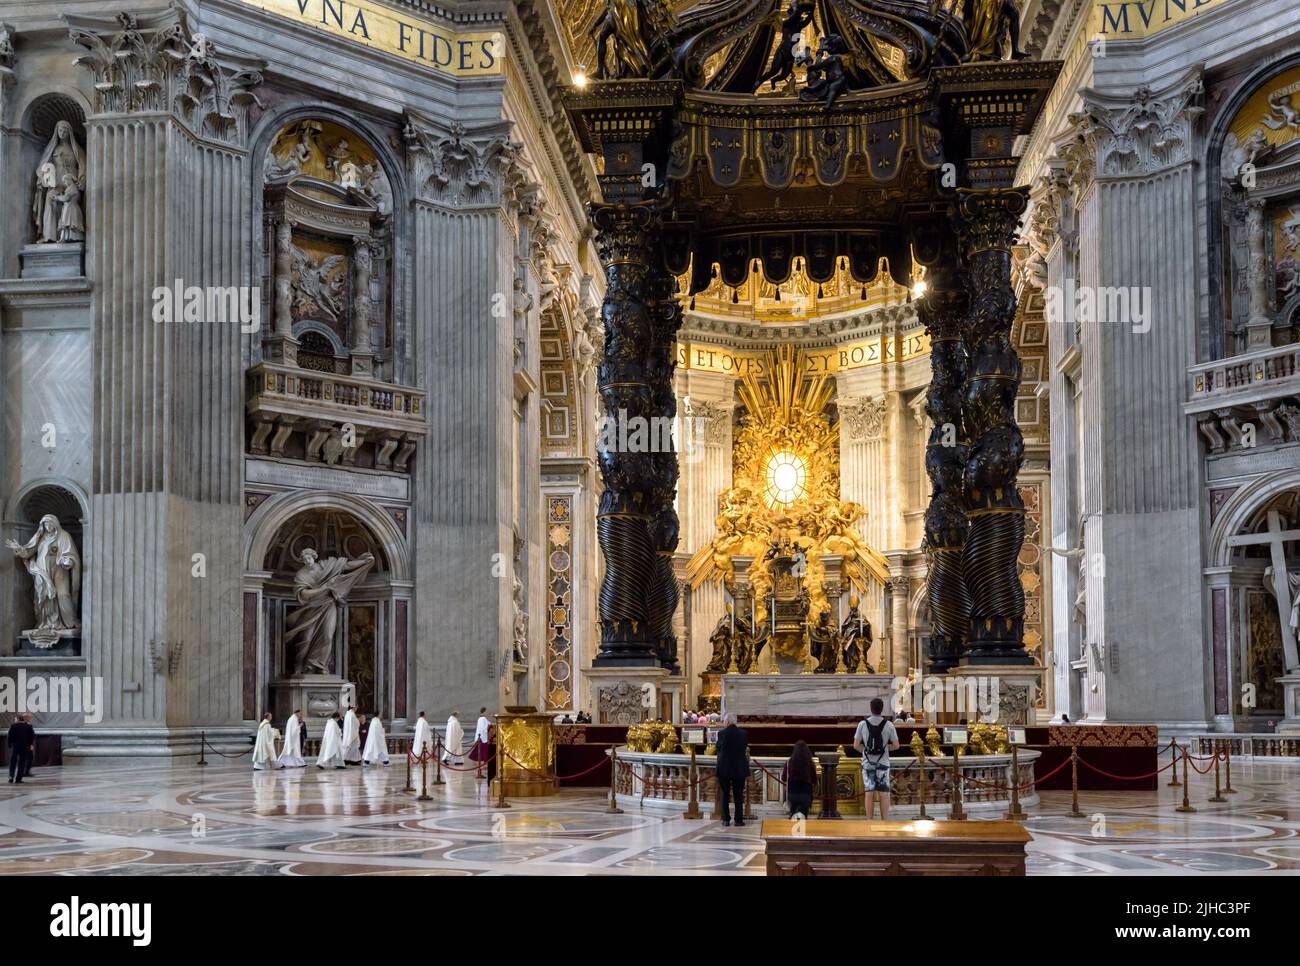 Rom - 12. Jun 2021: Im Petersdom, Rom, Italien. Die reich verzierte Kathedrale des Heiligen Peters ist das Wahrzeichen Roms und der Vatikanstadt. Luxuriöser Baldacchino Stockfoto